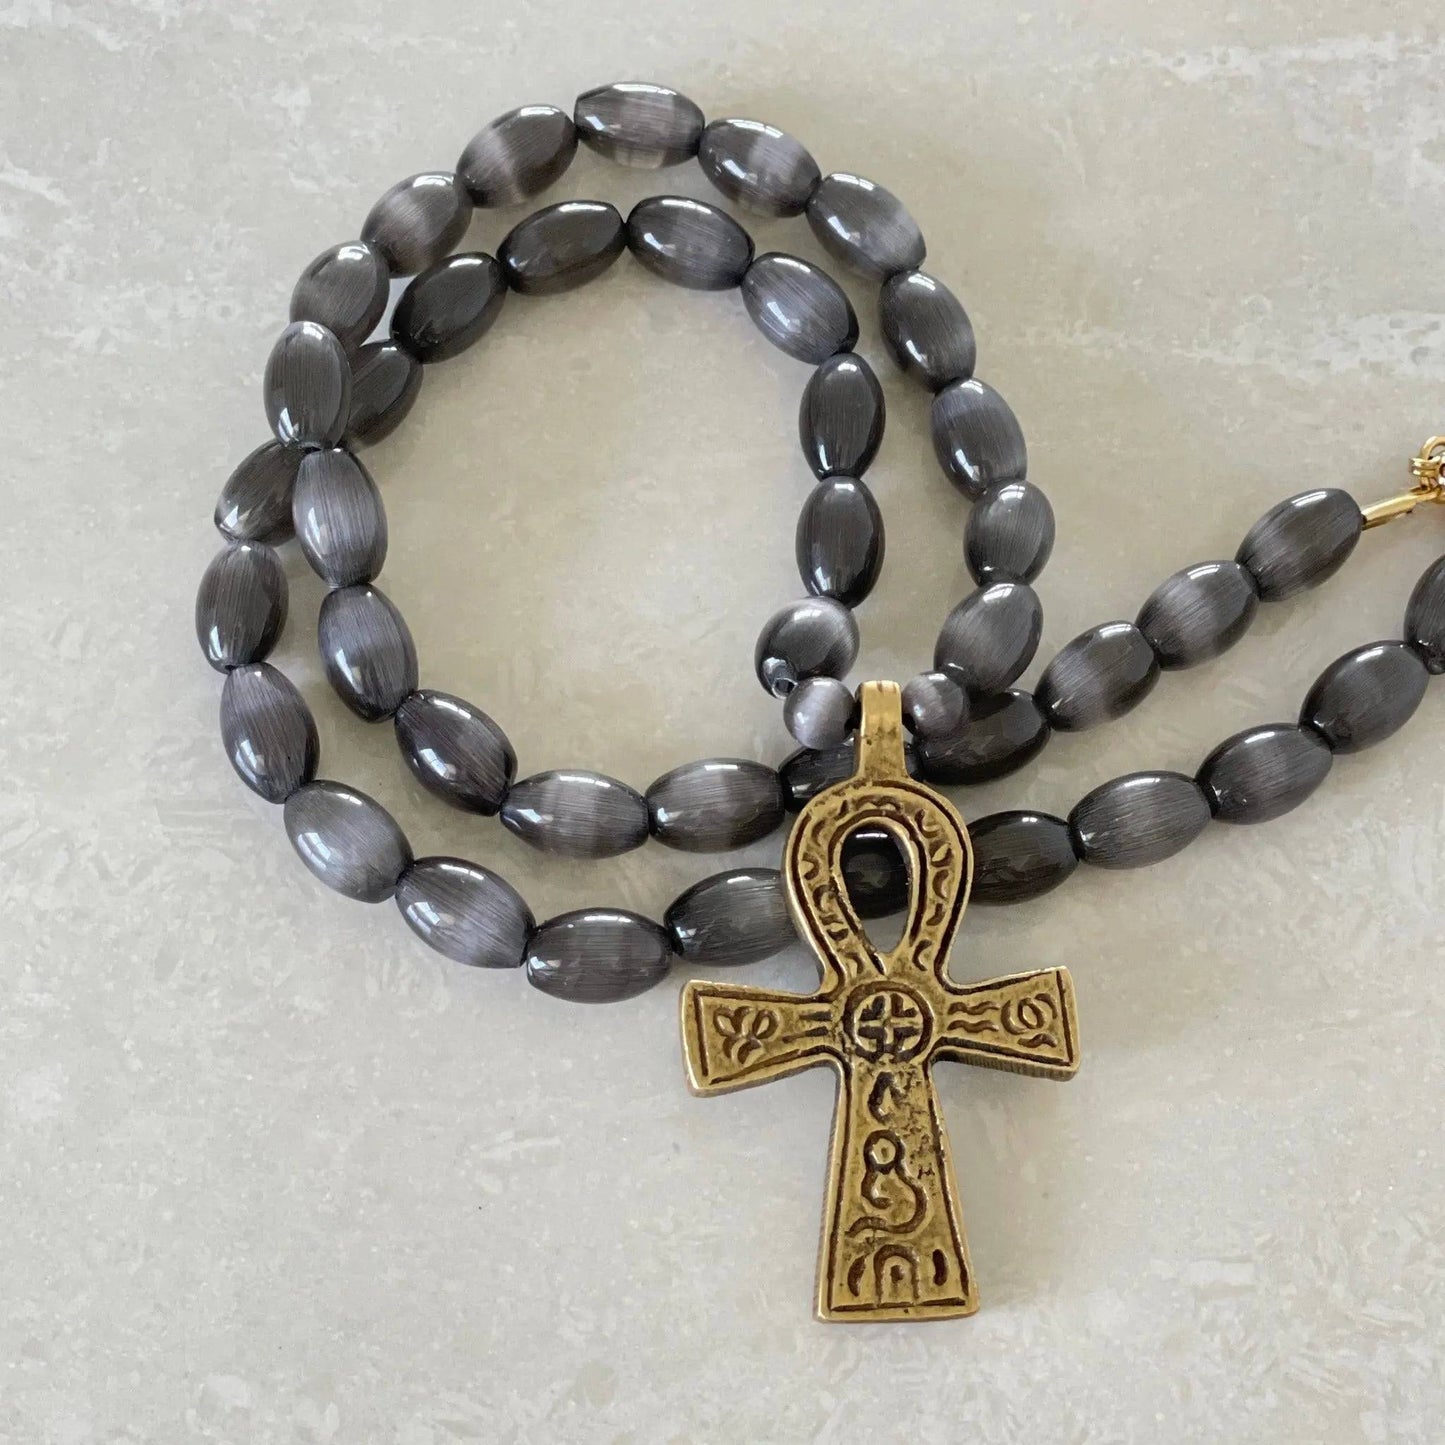 Ankh "Key of Life" Necklace - Uplift Beads